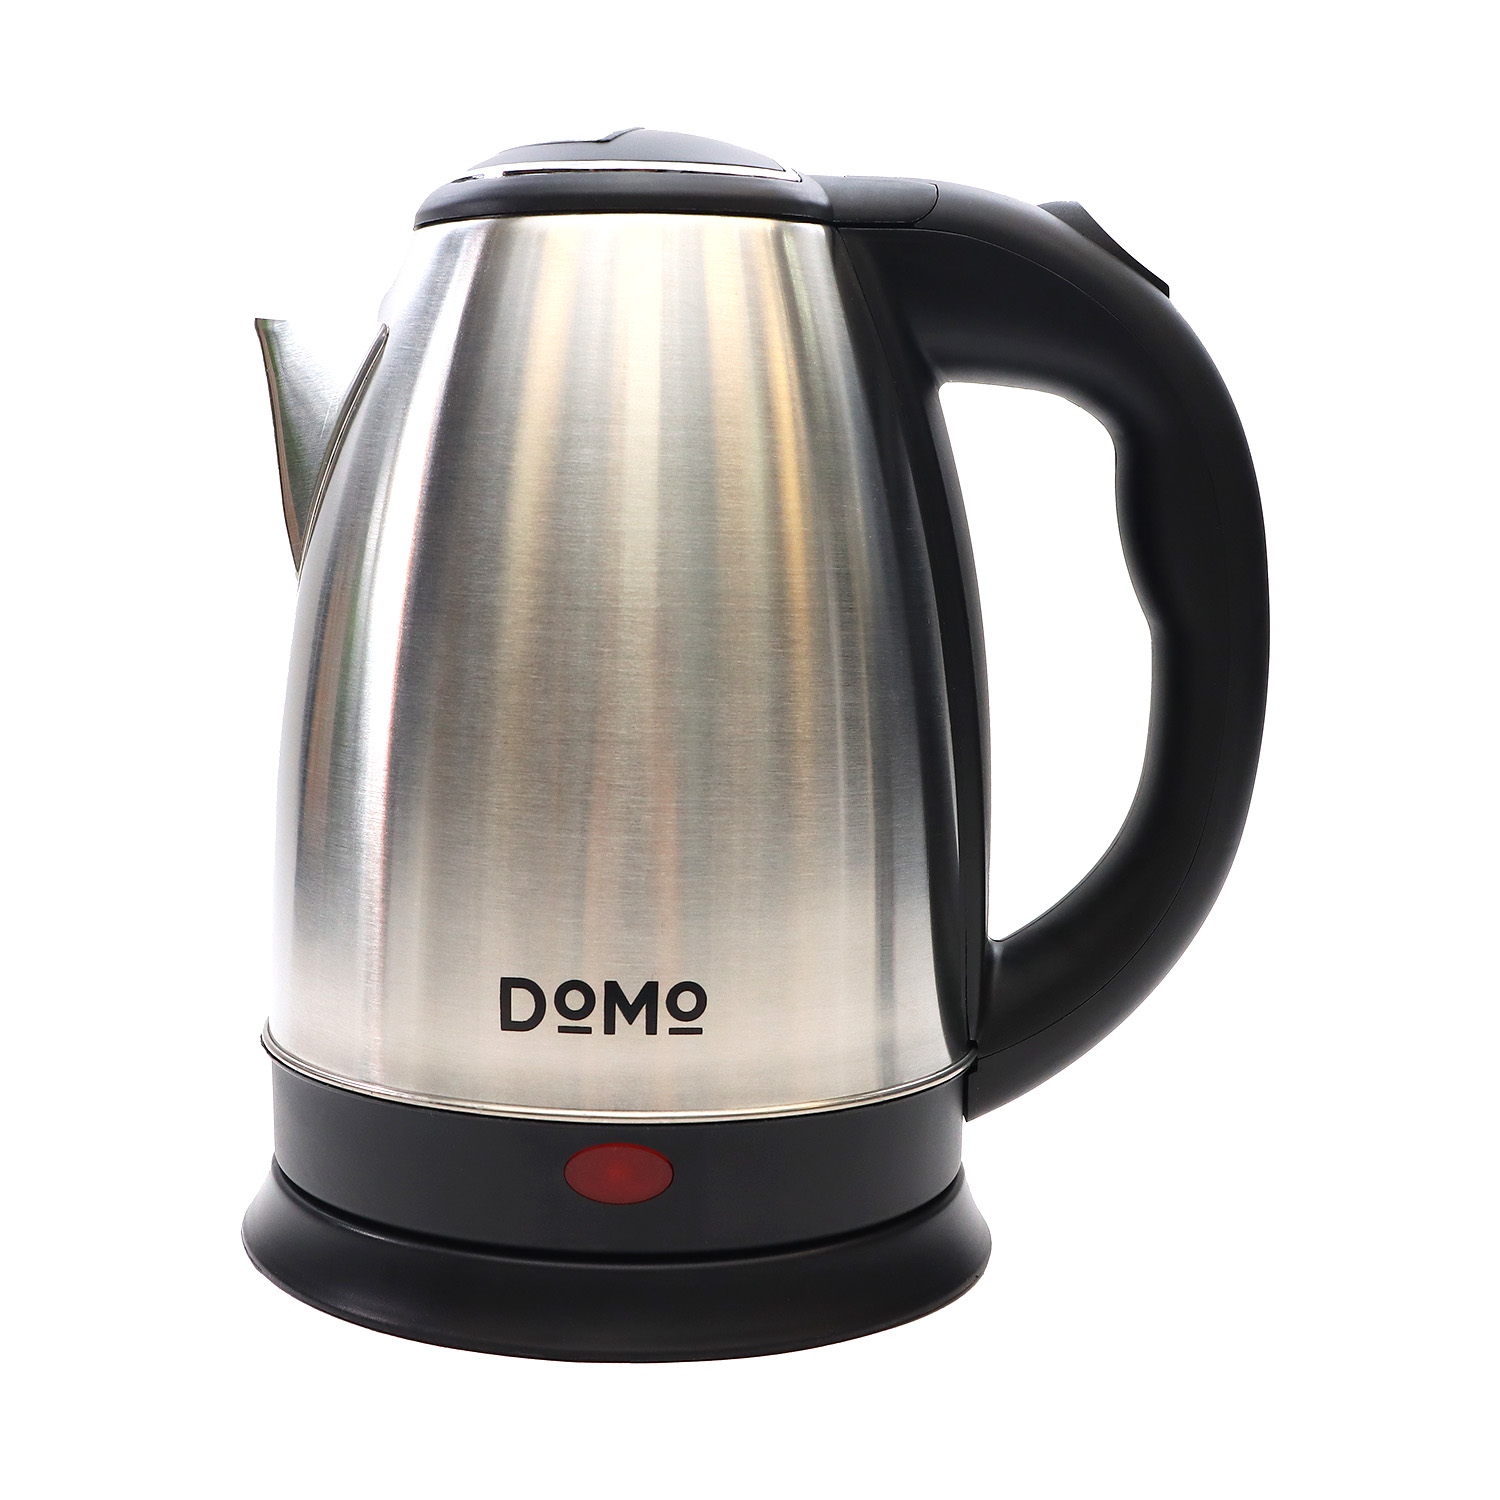 Чайник DOMO SML1801 2л. 1.6 кВт, металл/пластик, серебристый/черный (SML1801M) плохая упаковка, небольшие замятия на корпусе, не использовался, цвет серебристый/черный